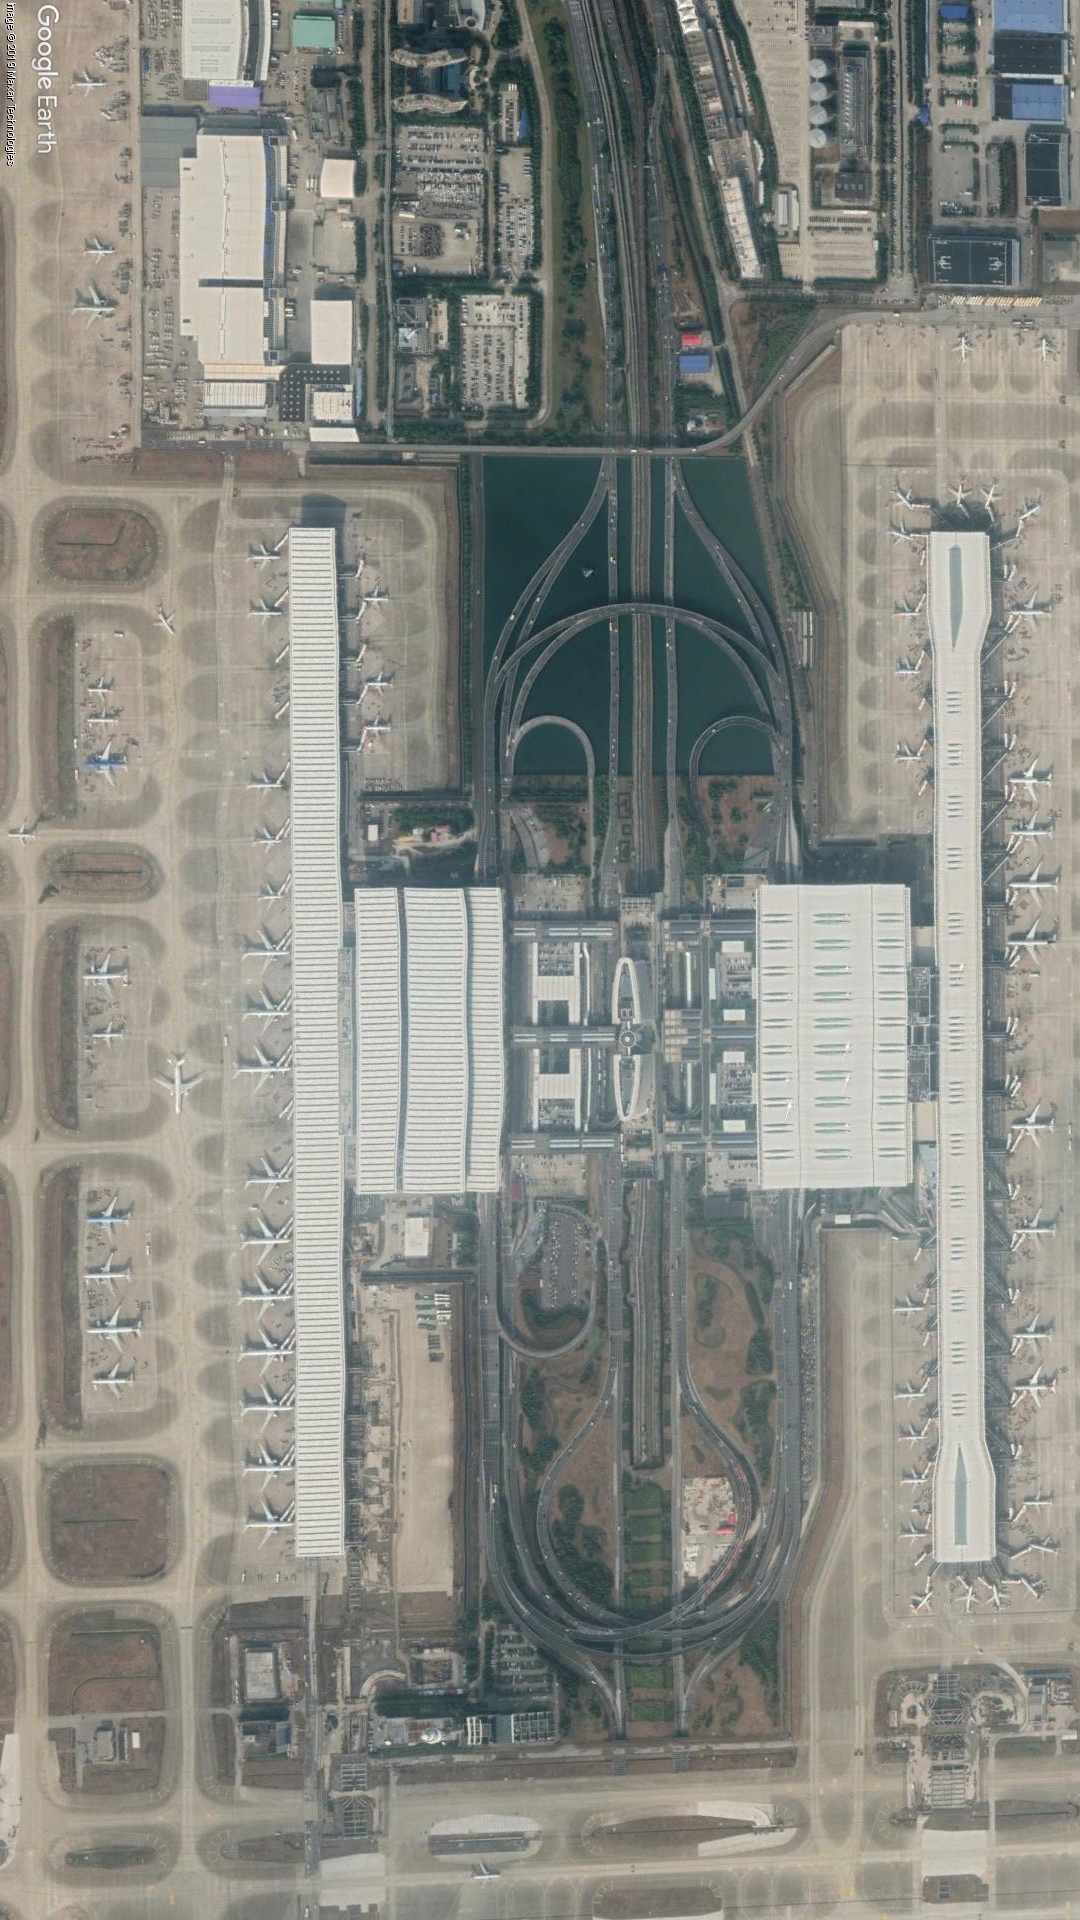 卫星航拍中国10大机场,广州机场像鳄鱼,重庆昆明像甲虫,神奇!